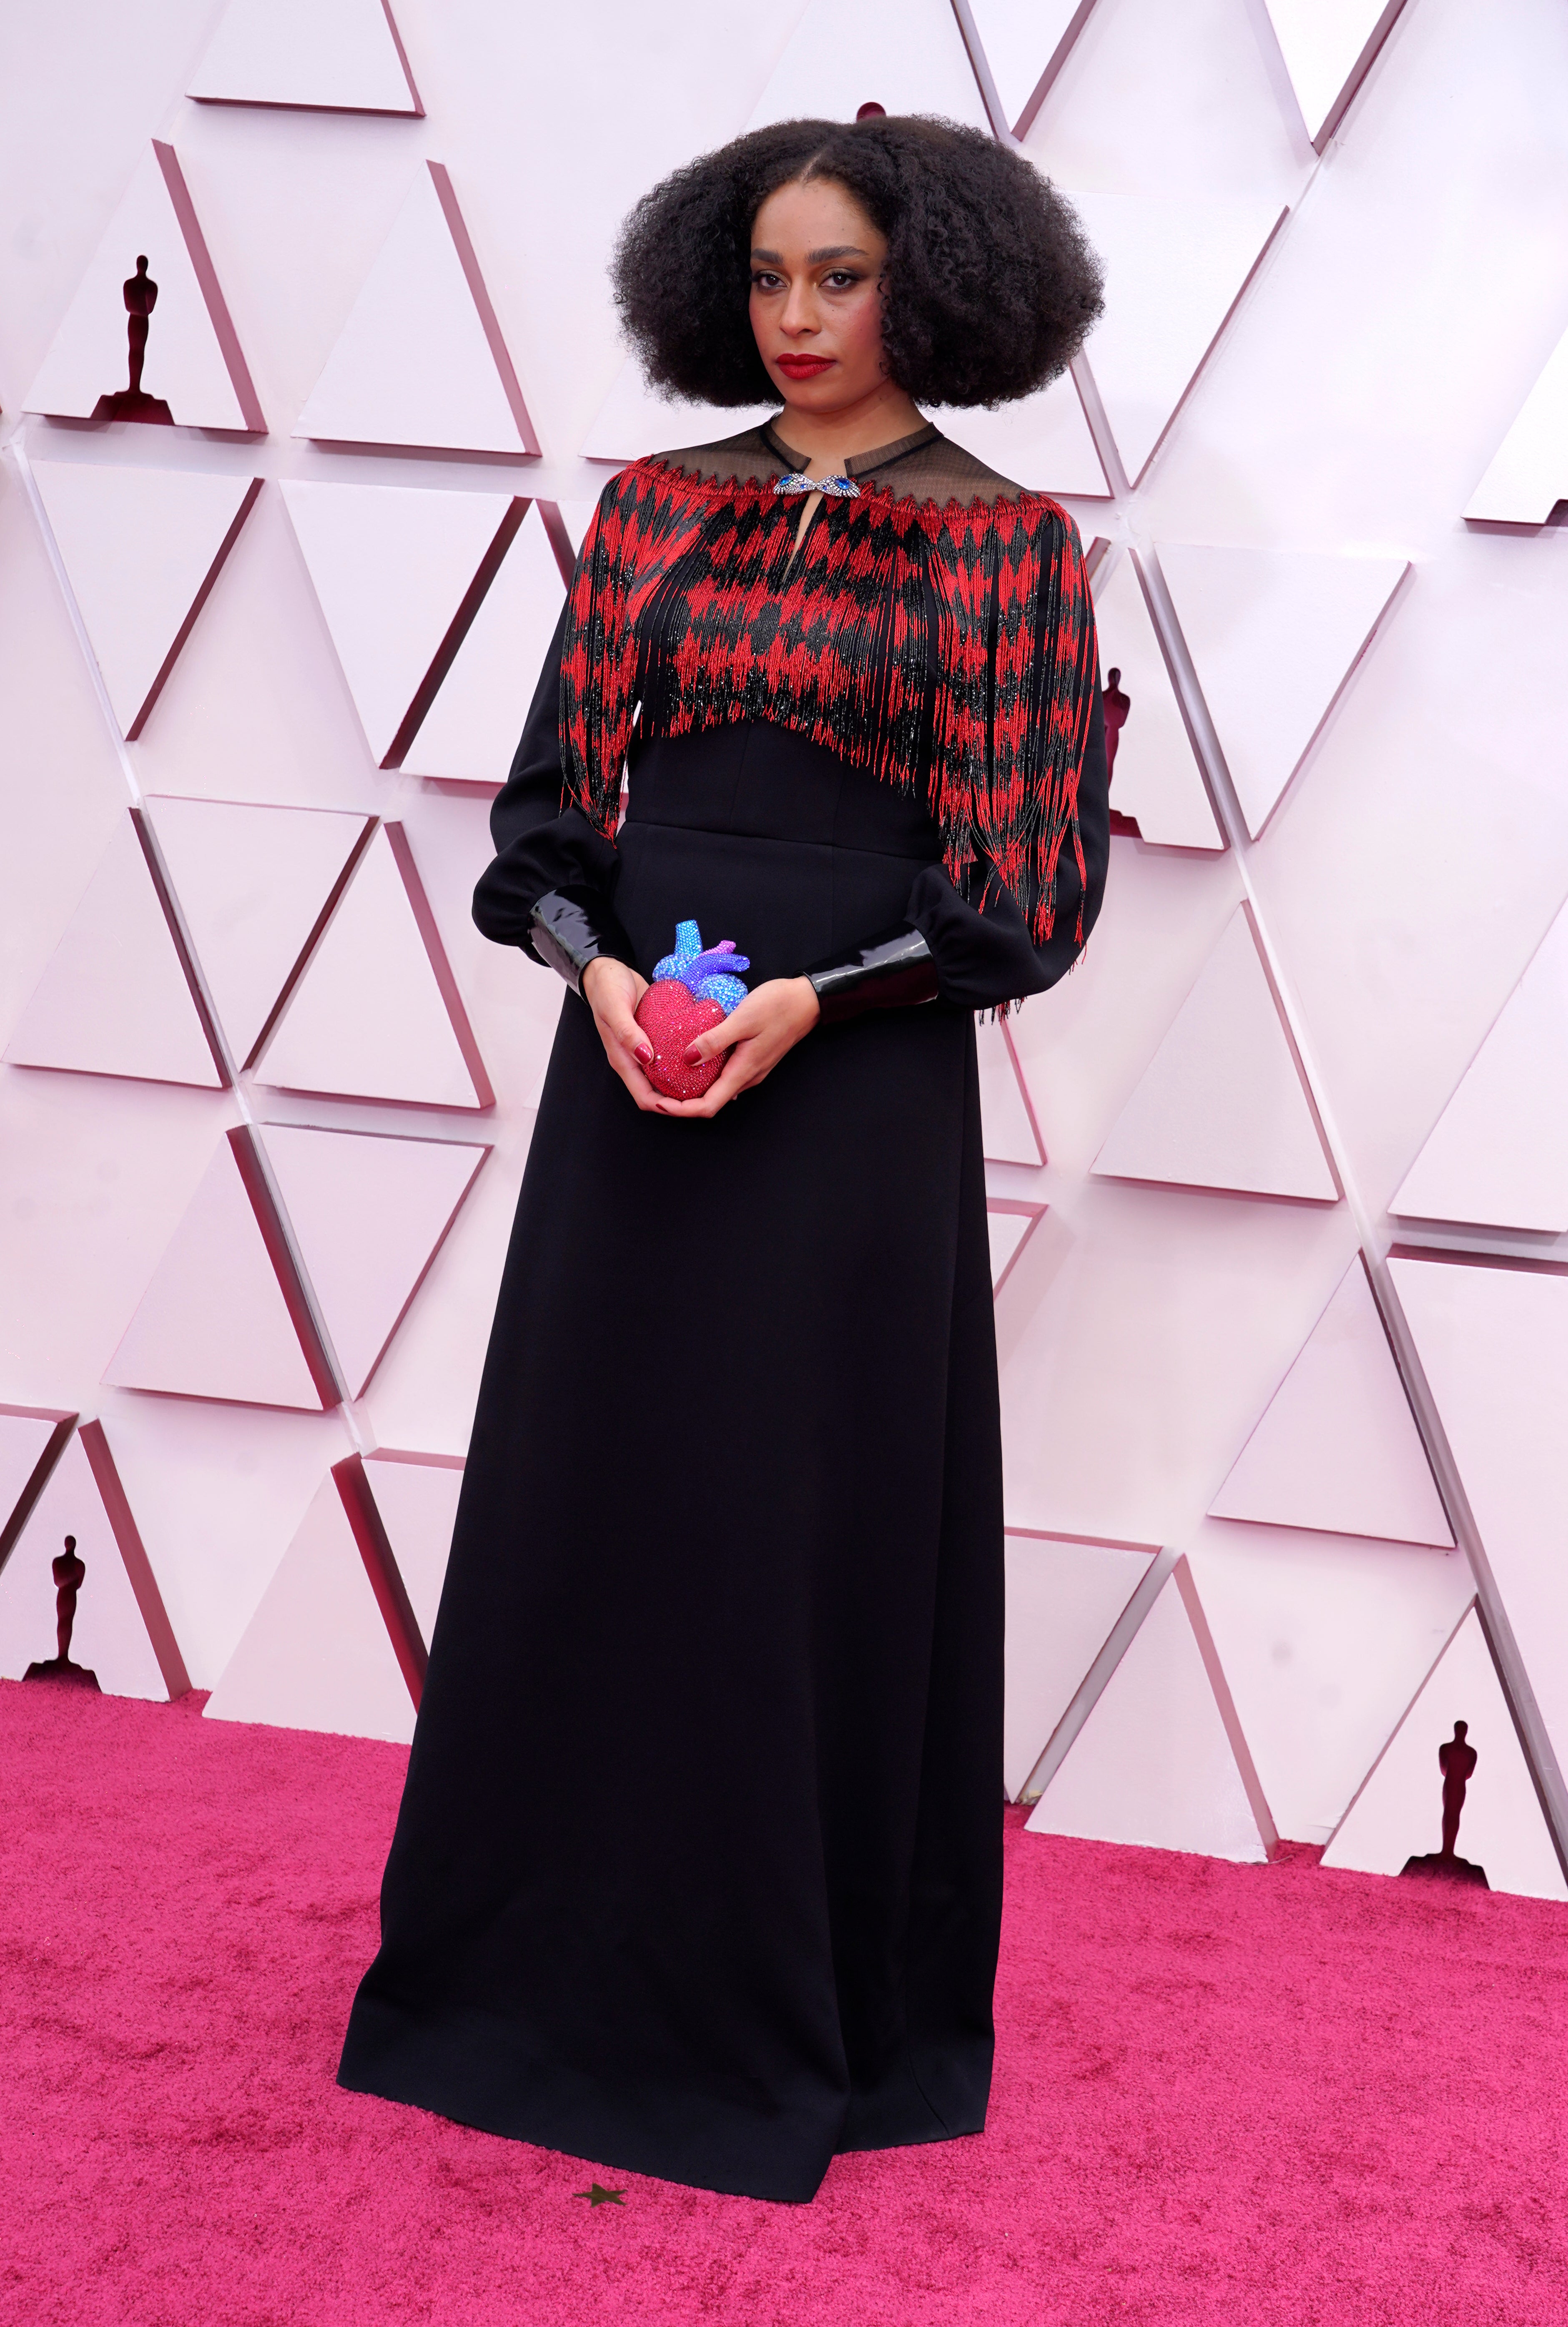 Celeste Waite at the 93rd Academy Awards